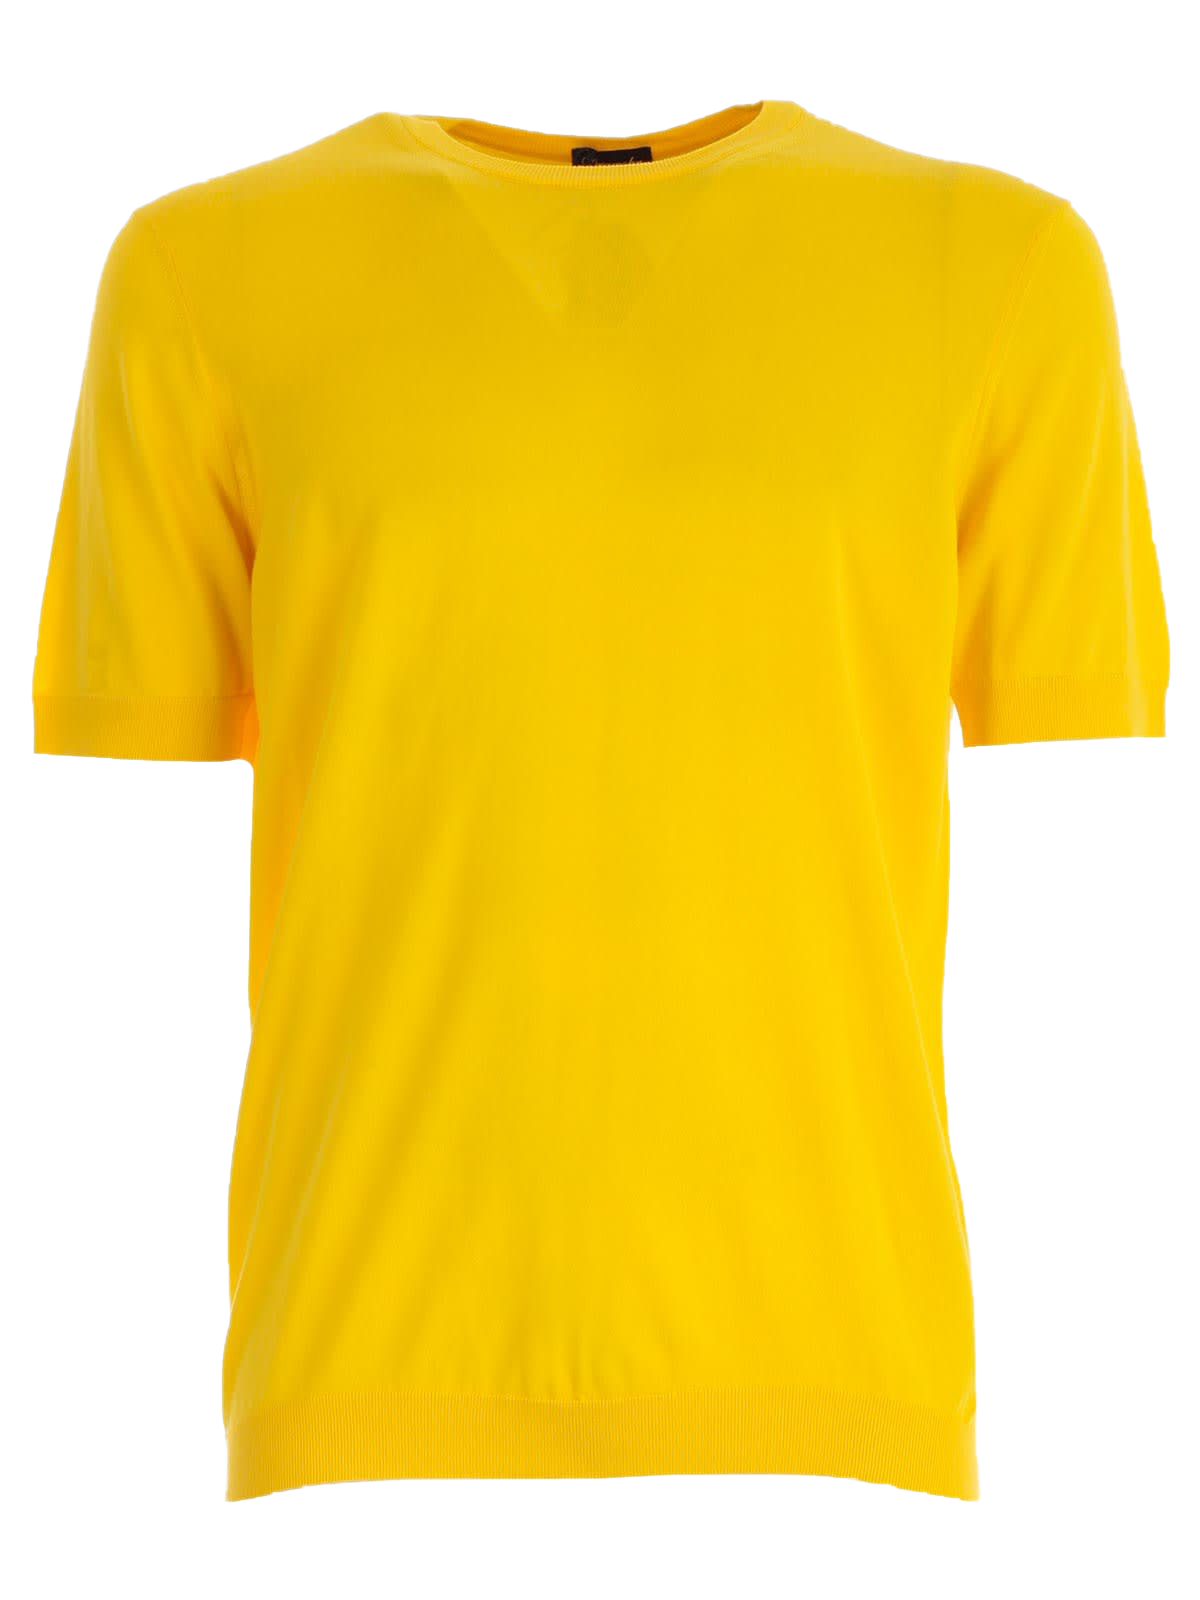 Einfaches gelbes T-Shirt PNG-Bild